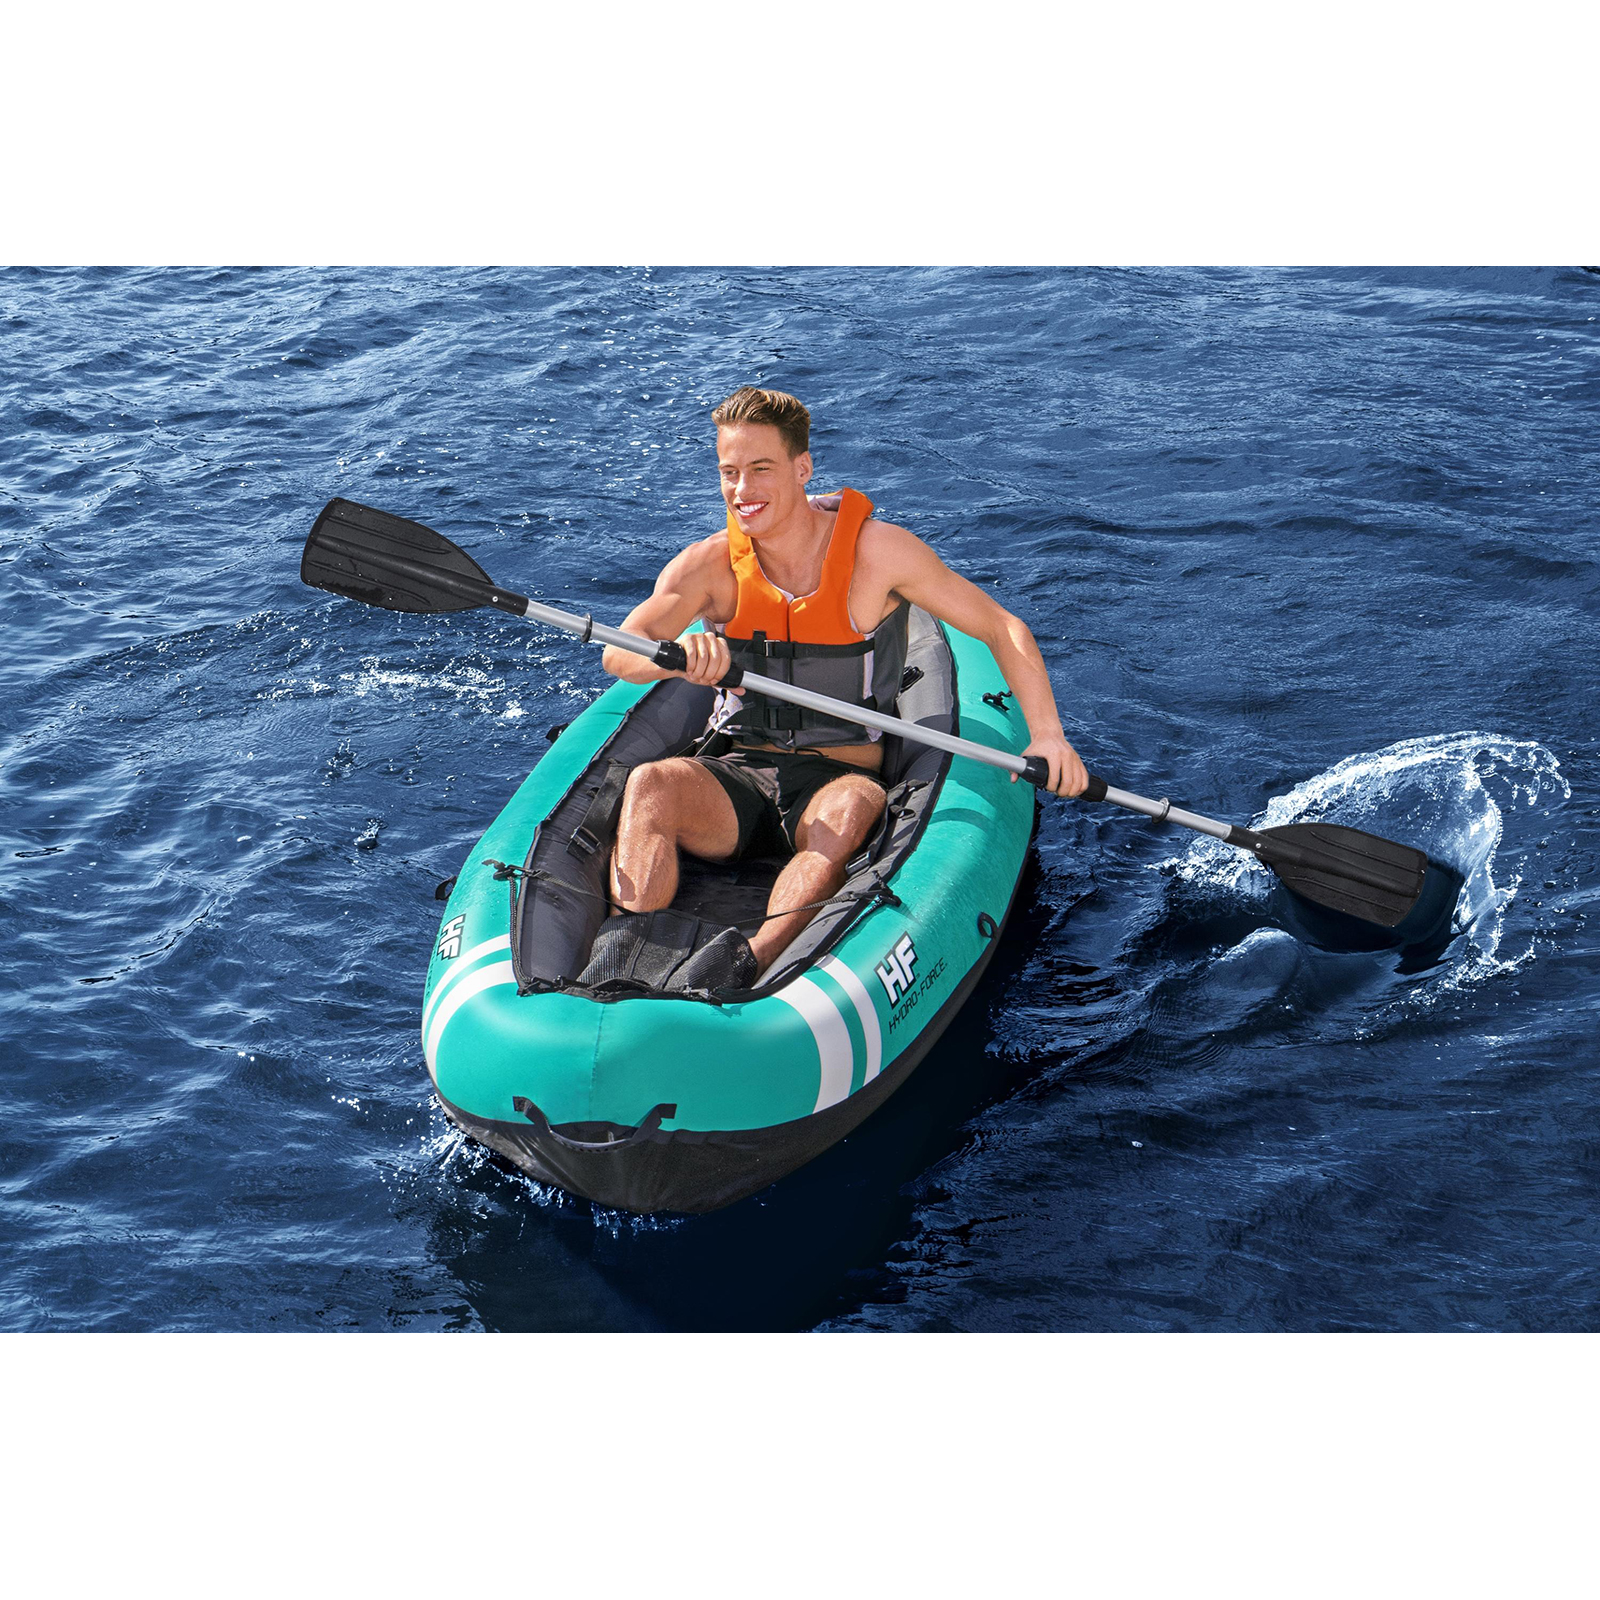 Kayak Hinchable Bestway Hydro-force Ventura 280x86 Cm 1 Persona Con Inflador Y Remo - Kayak 2 plazas  MKP